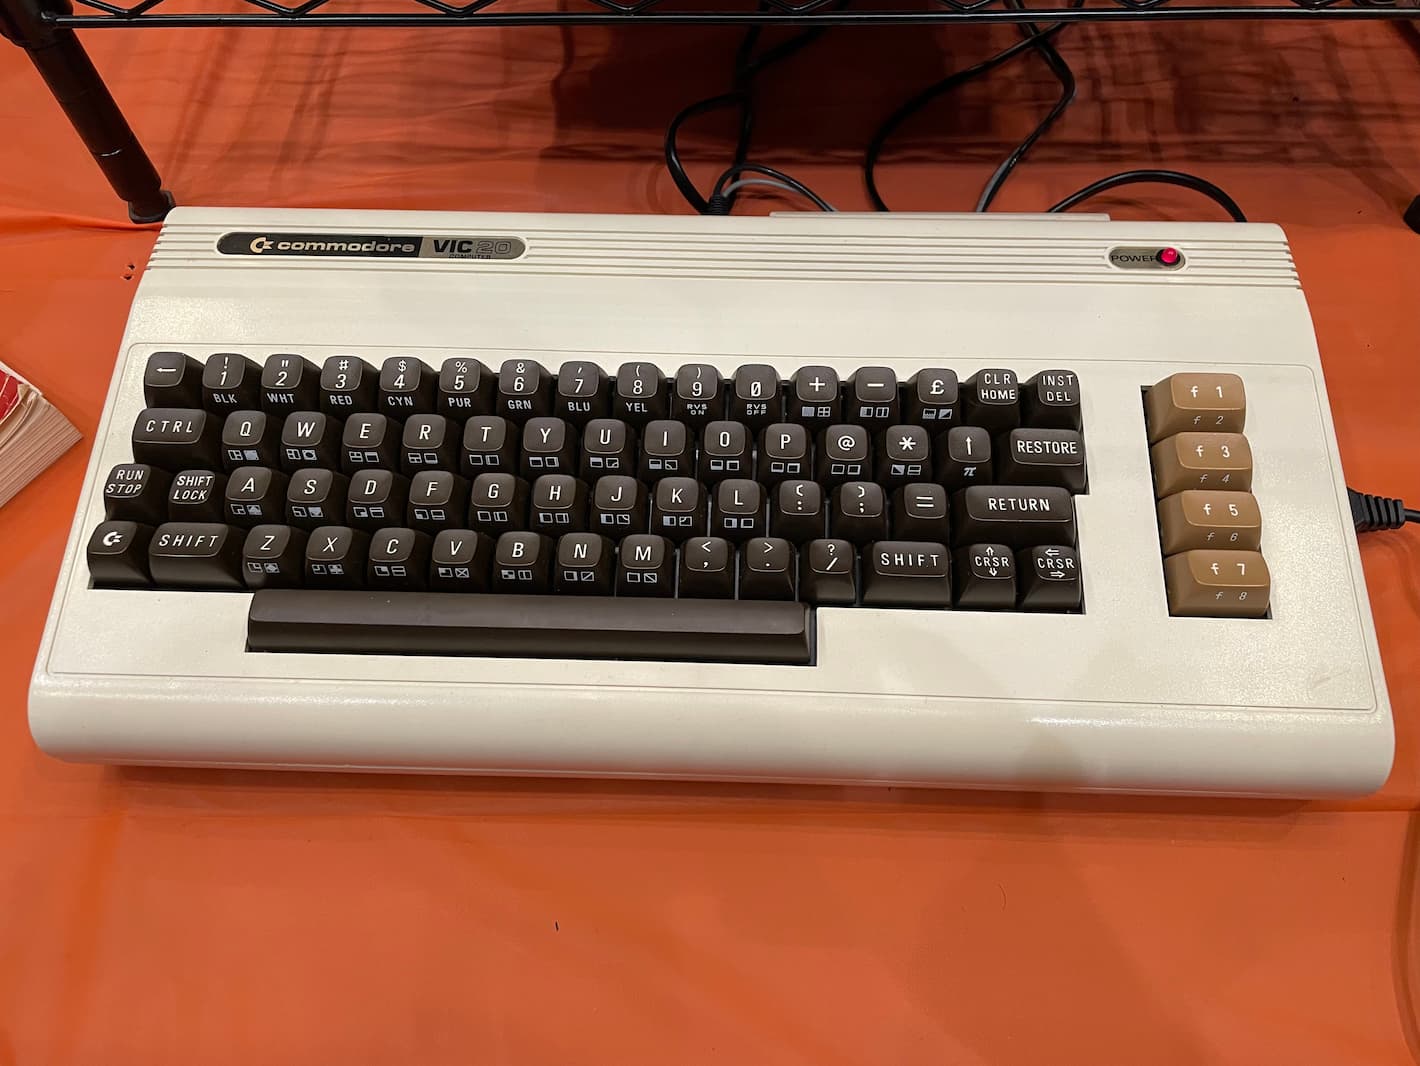 A Commodore VIC-20.